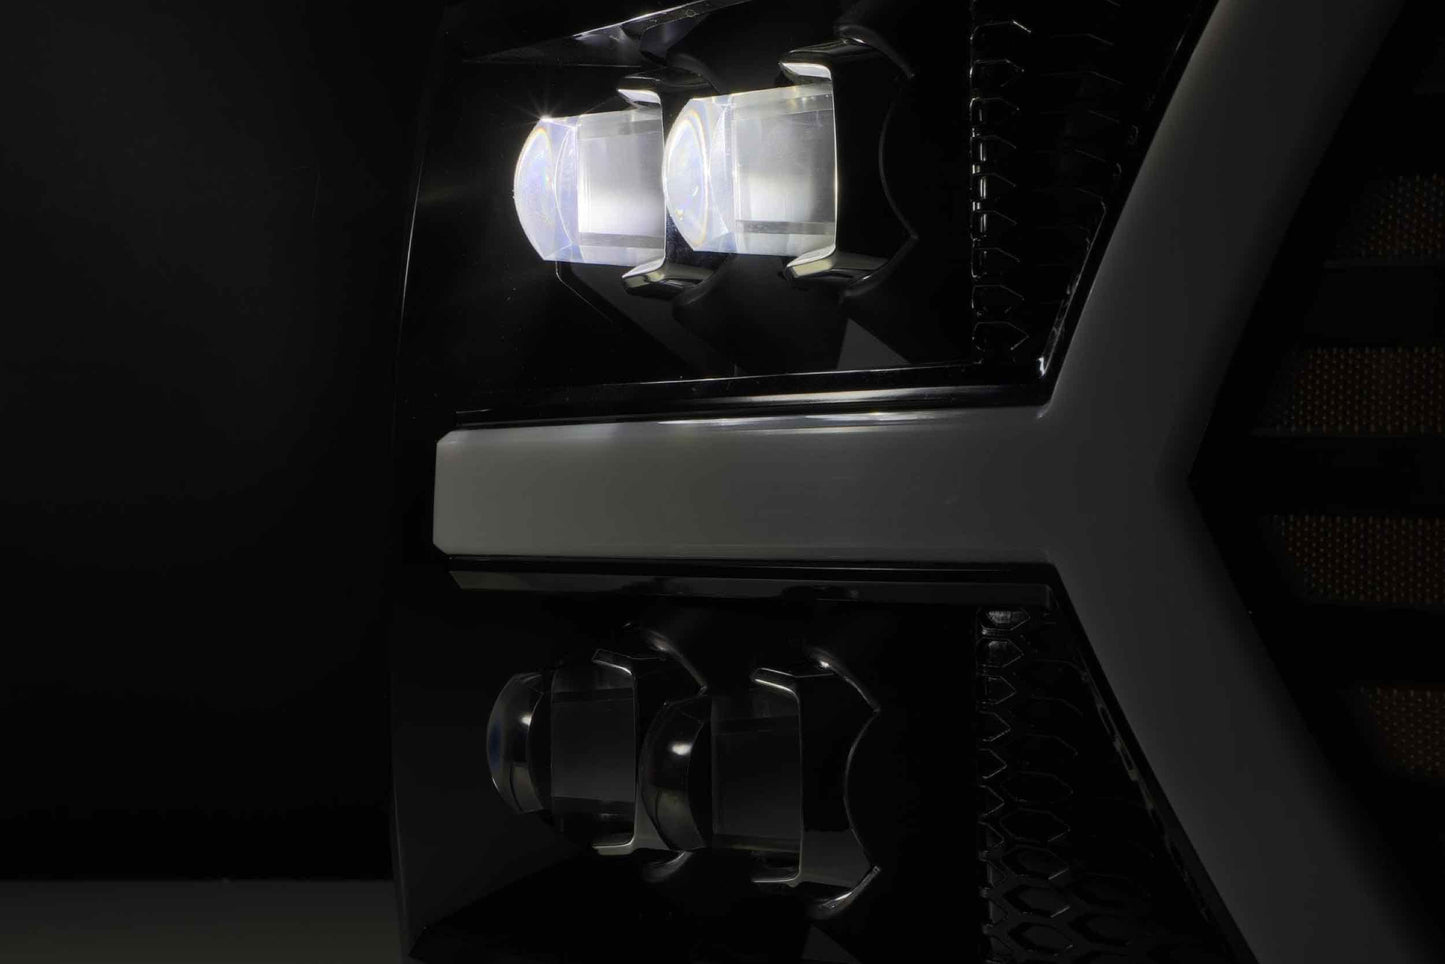 ARex Nova LED Headlights: Chevy Silverado 1500 (07-13) - Chrome (Set)